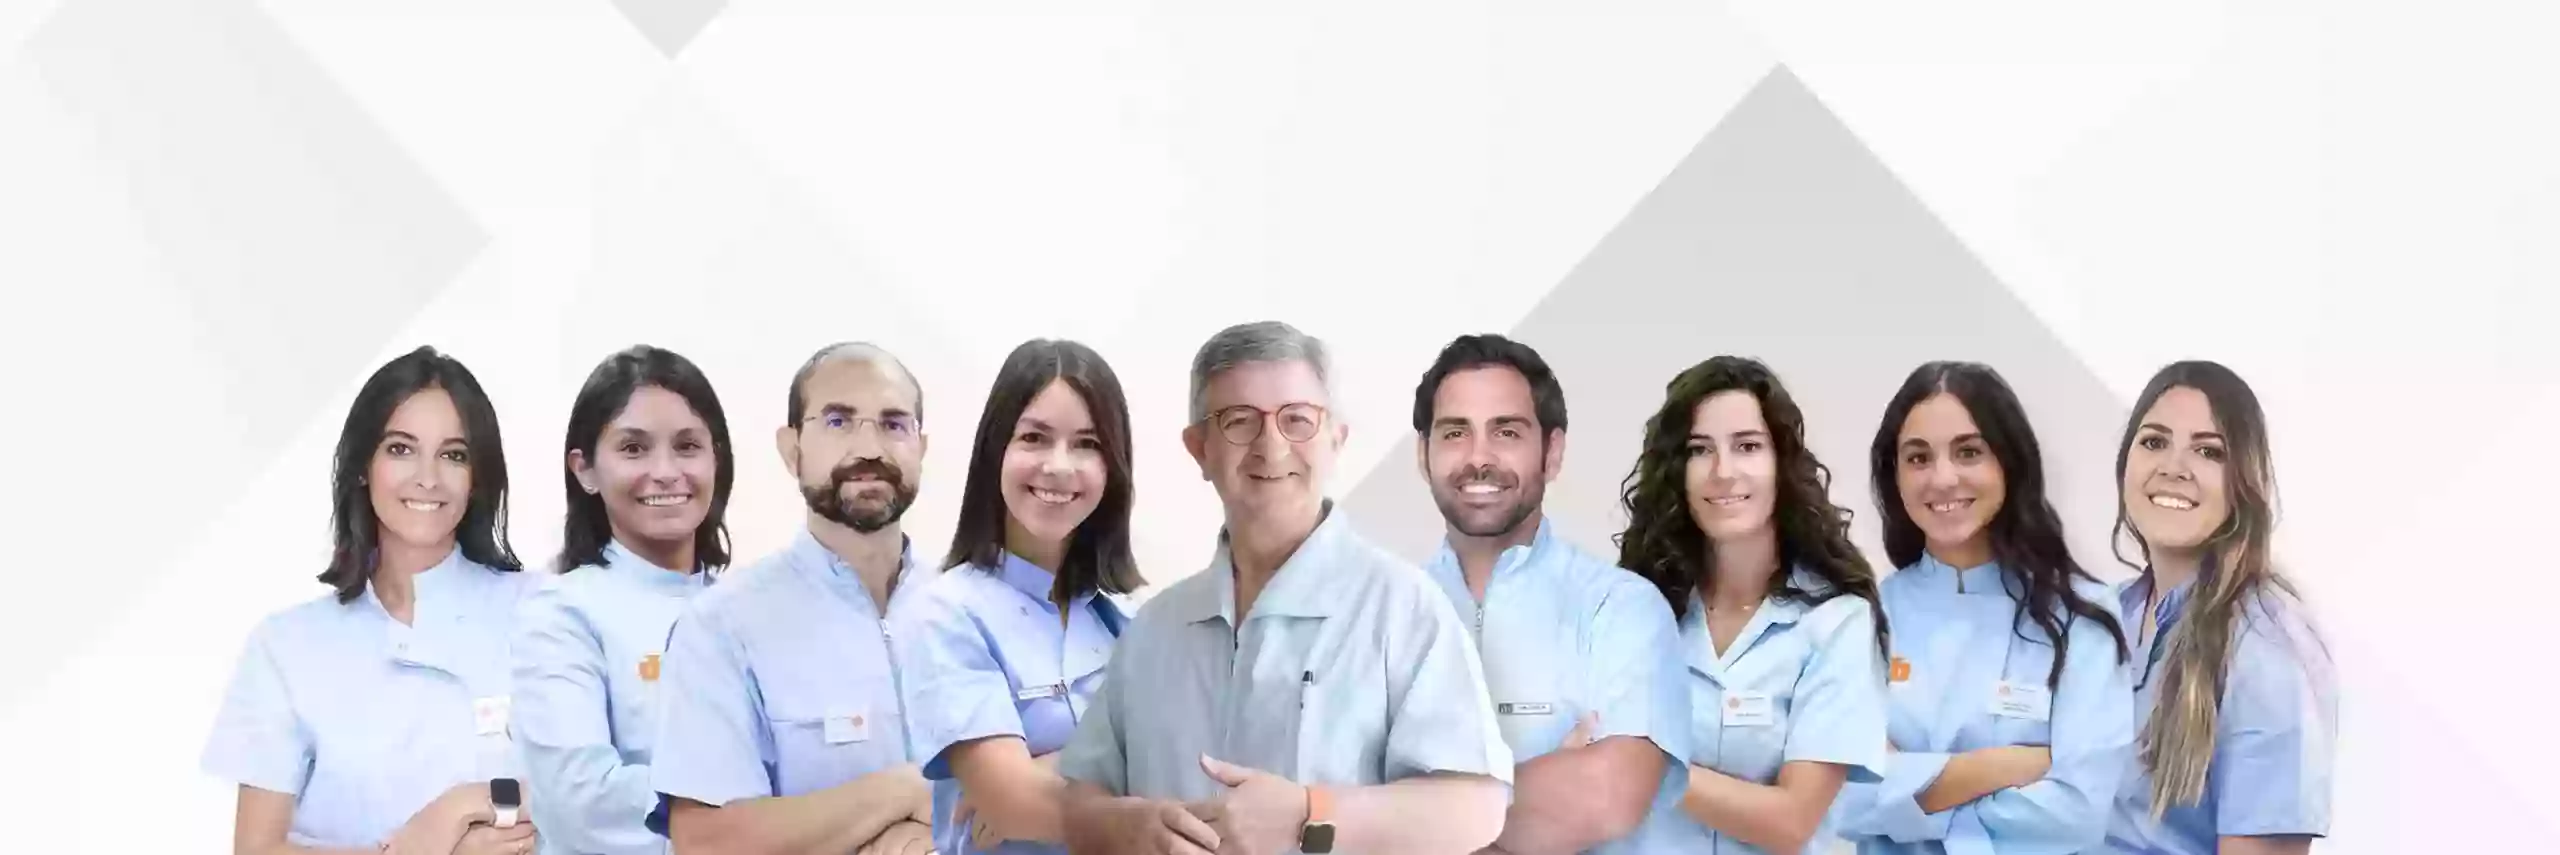 Clínica Dental Galván Recoletos Cuatro | Dentistas en Valladolid